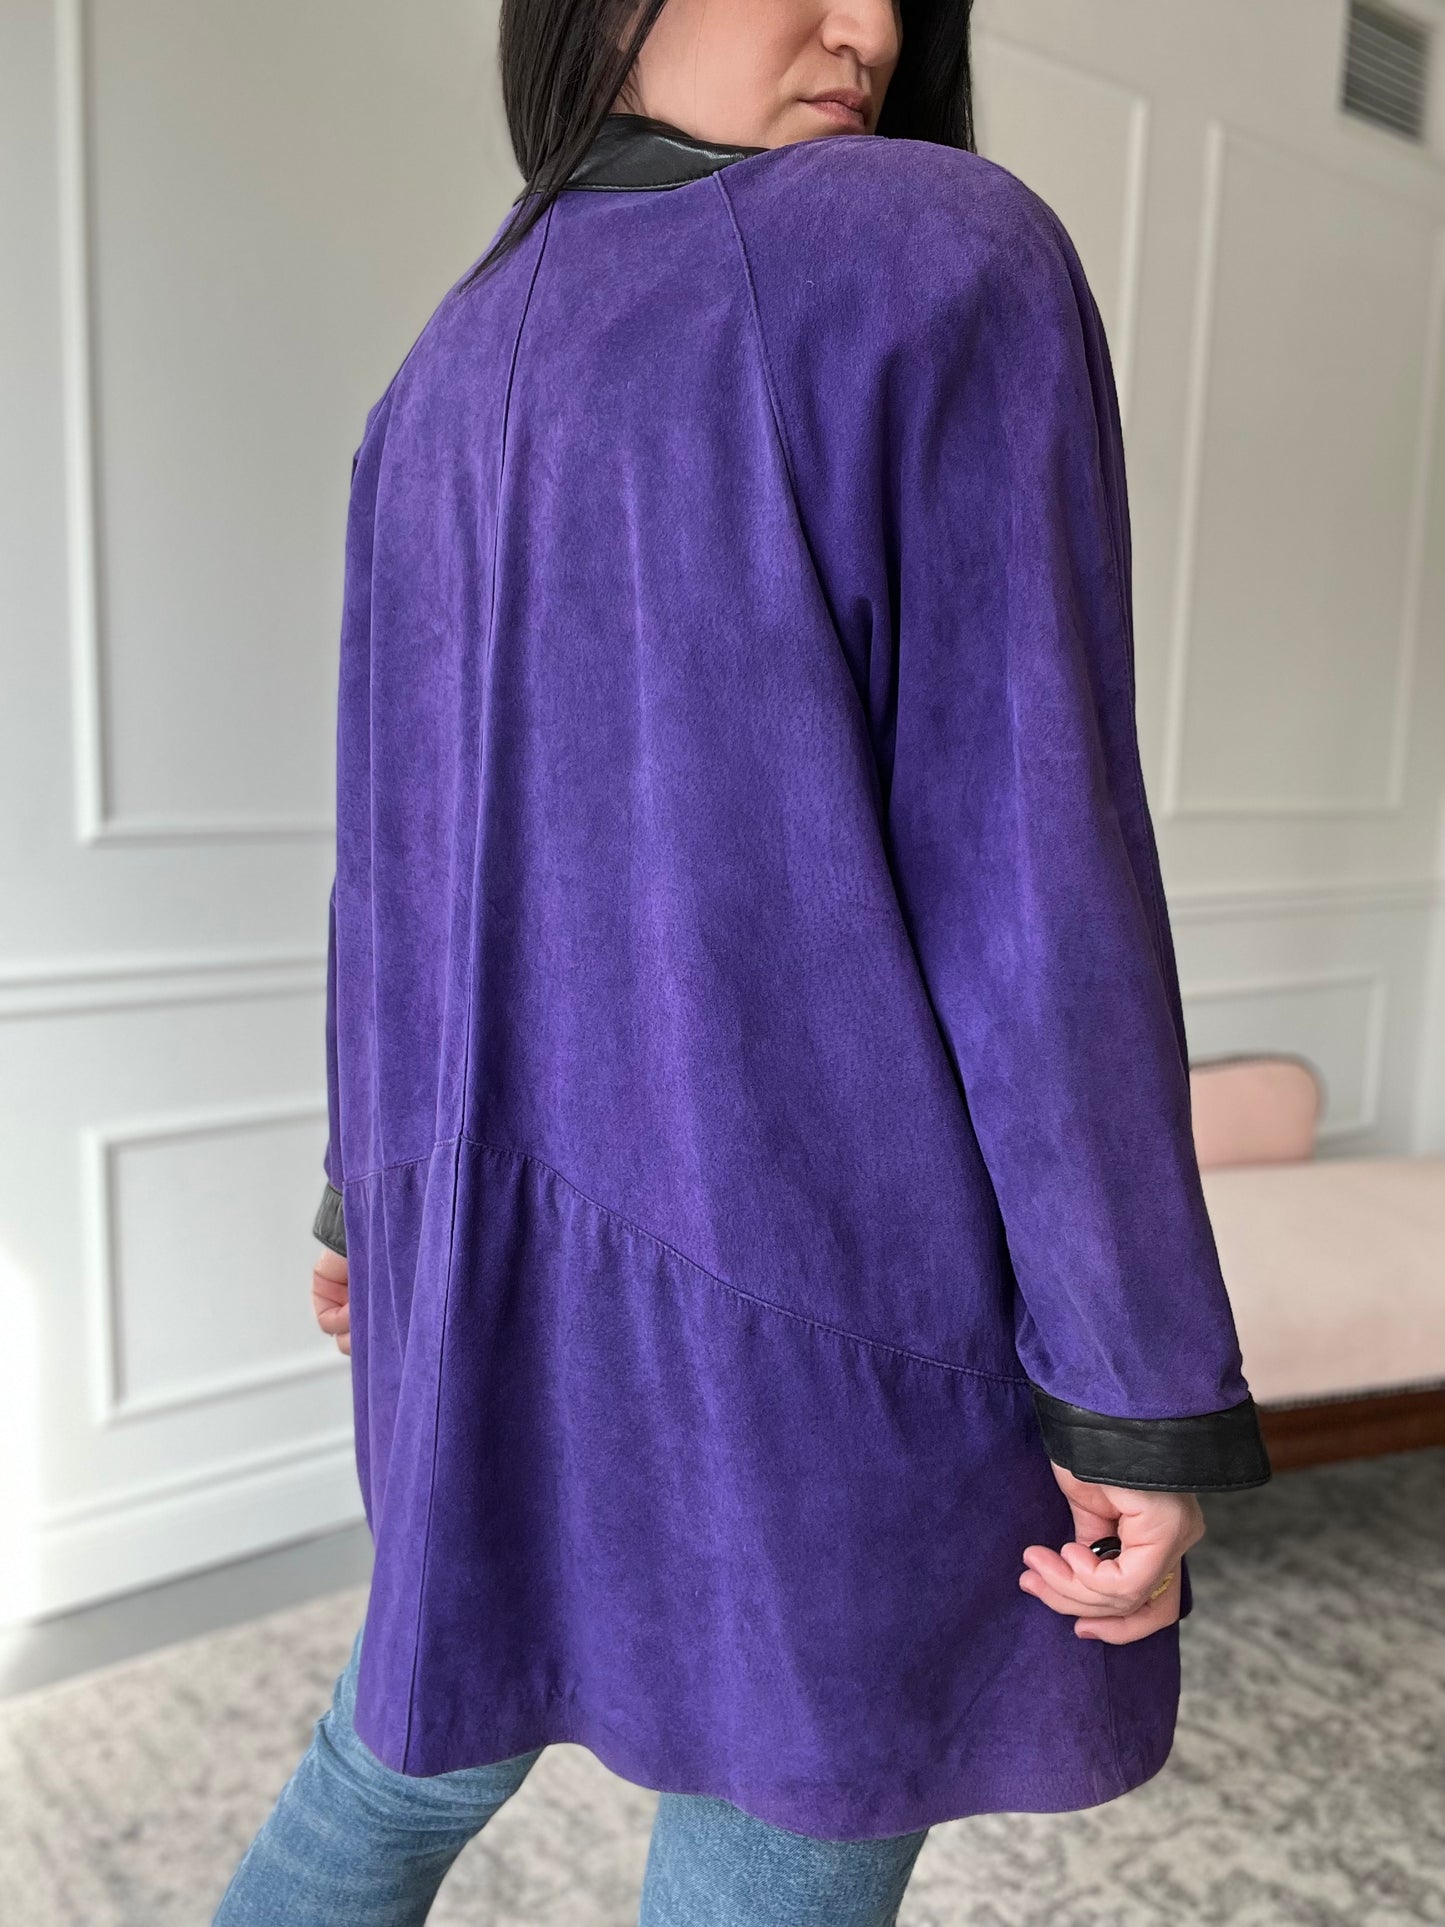 Vintage Danier Leather Purple Jacket - Size L